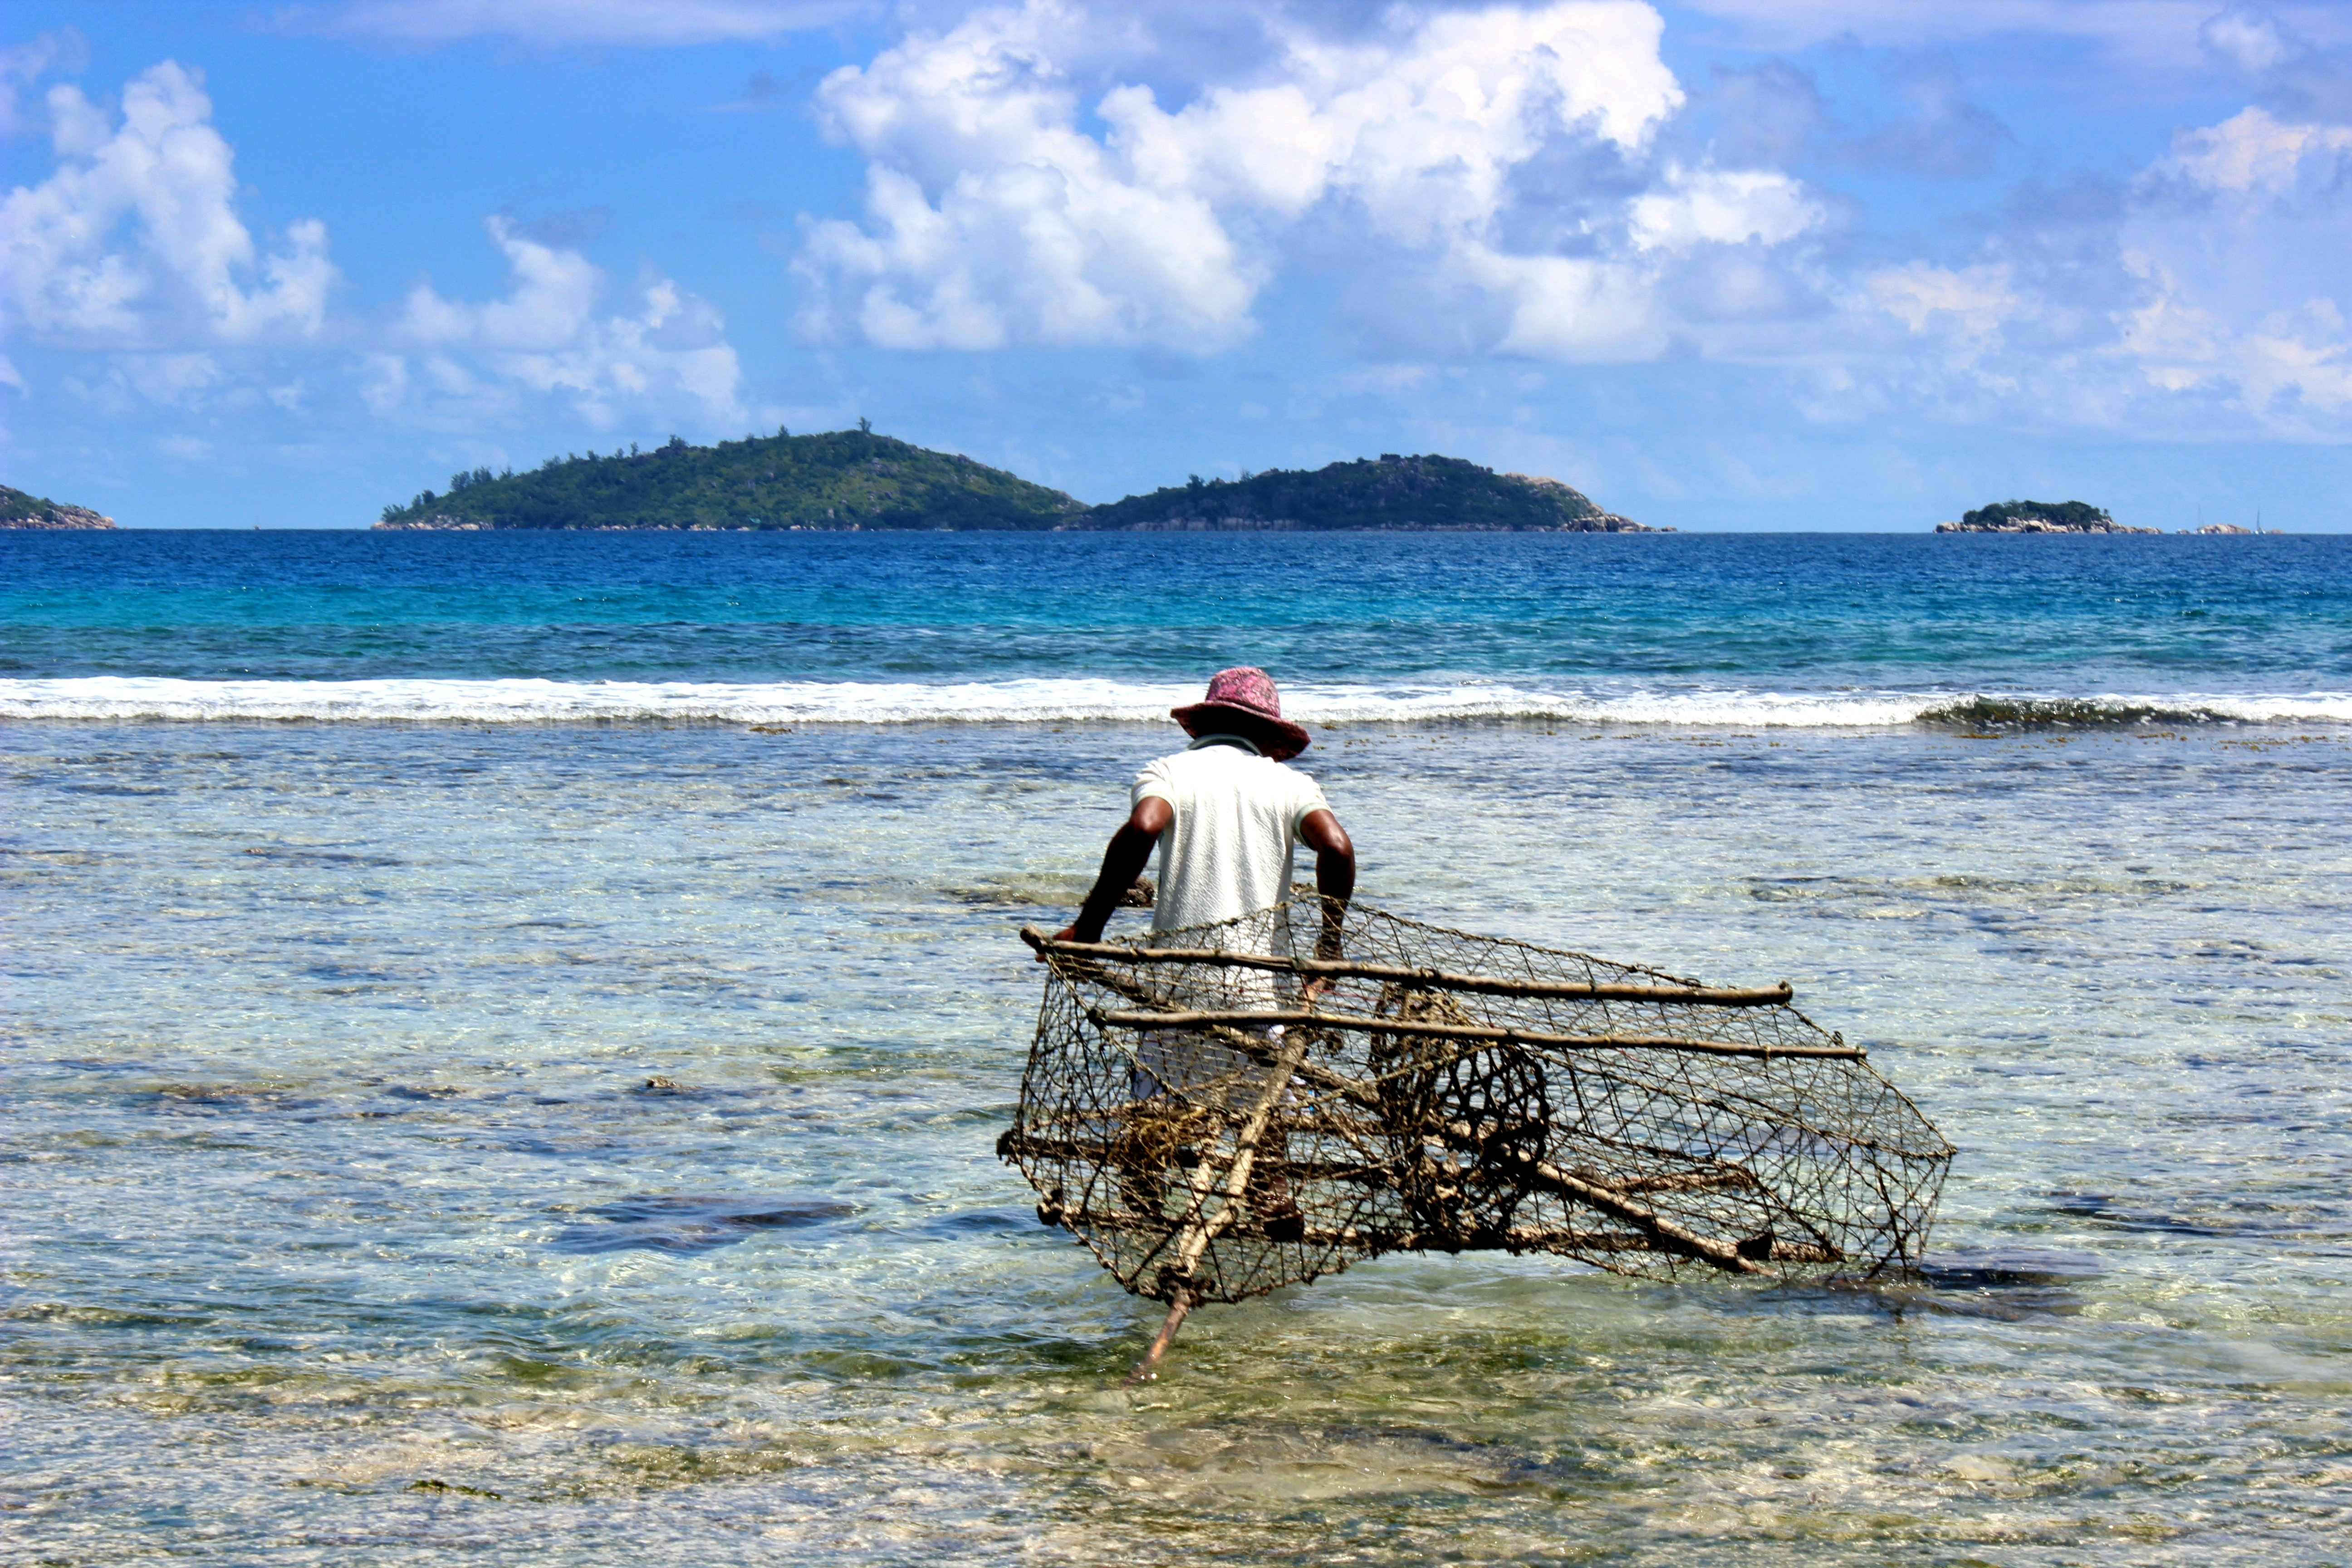 Рыболовство - основной вид деятельности местных жителей